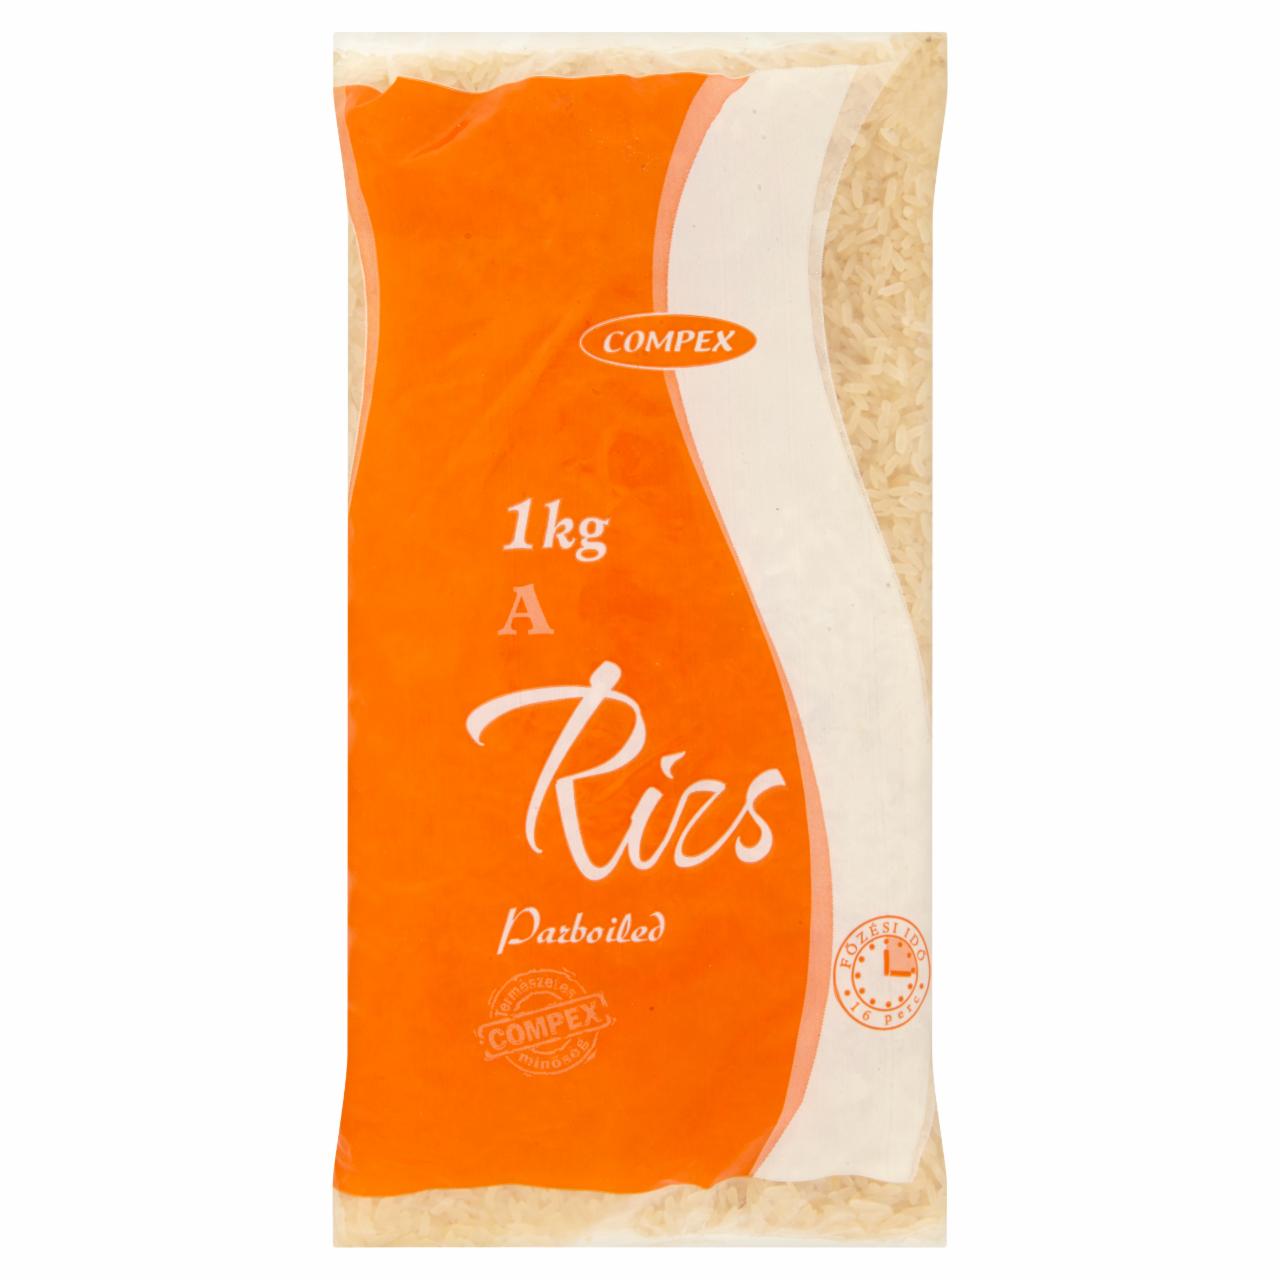 Képek - Compex A parboiled rizs 1 kg